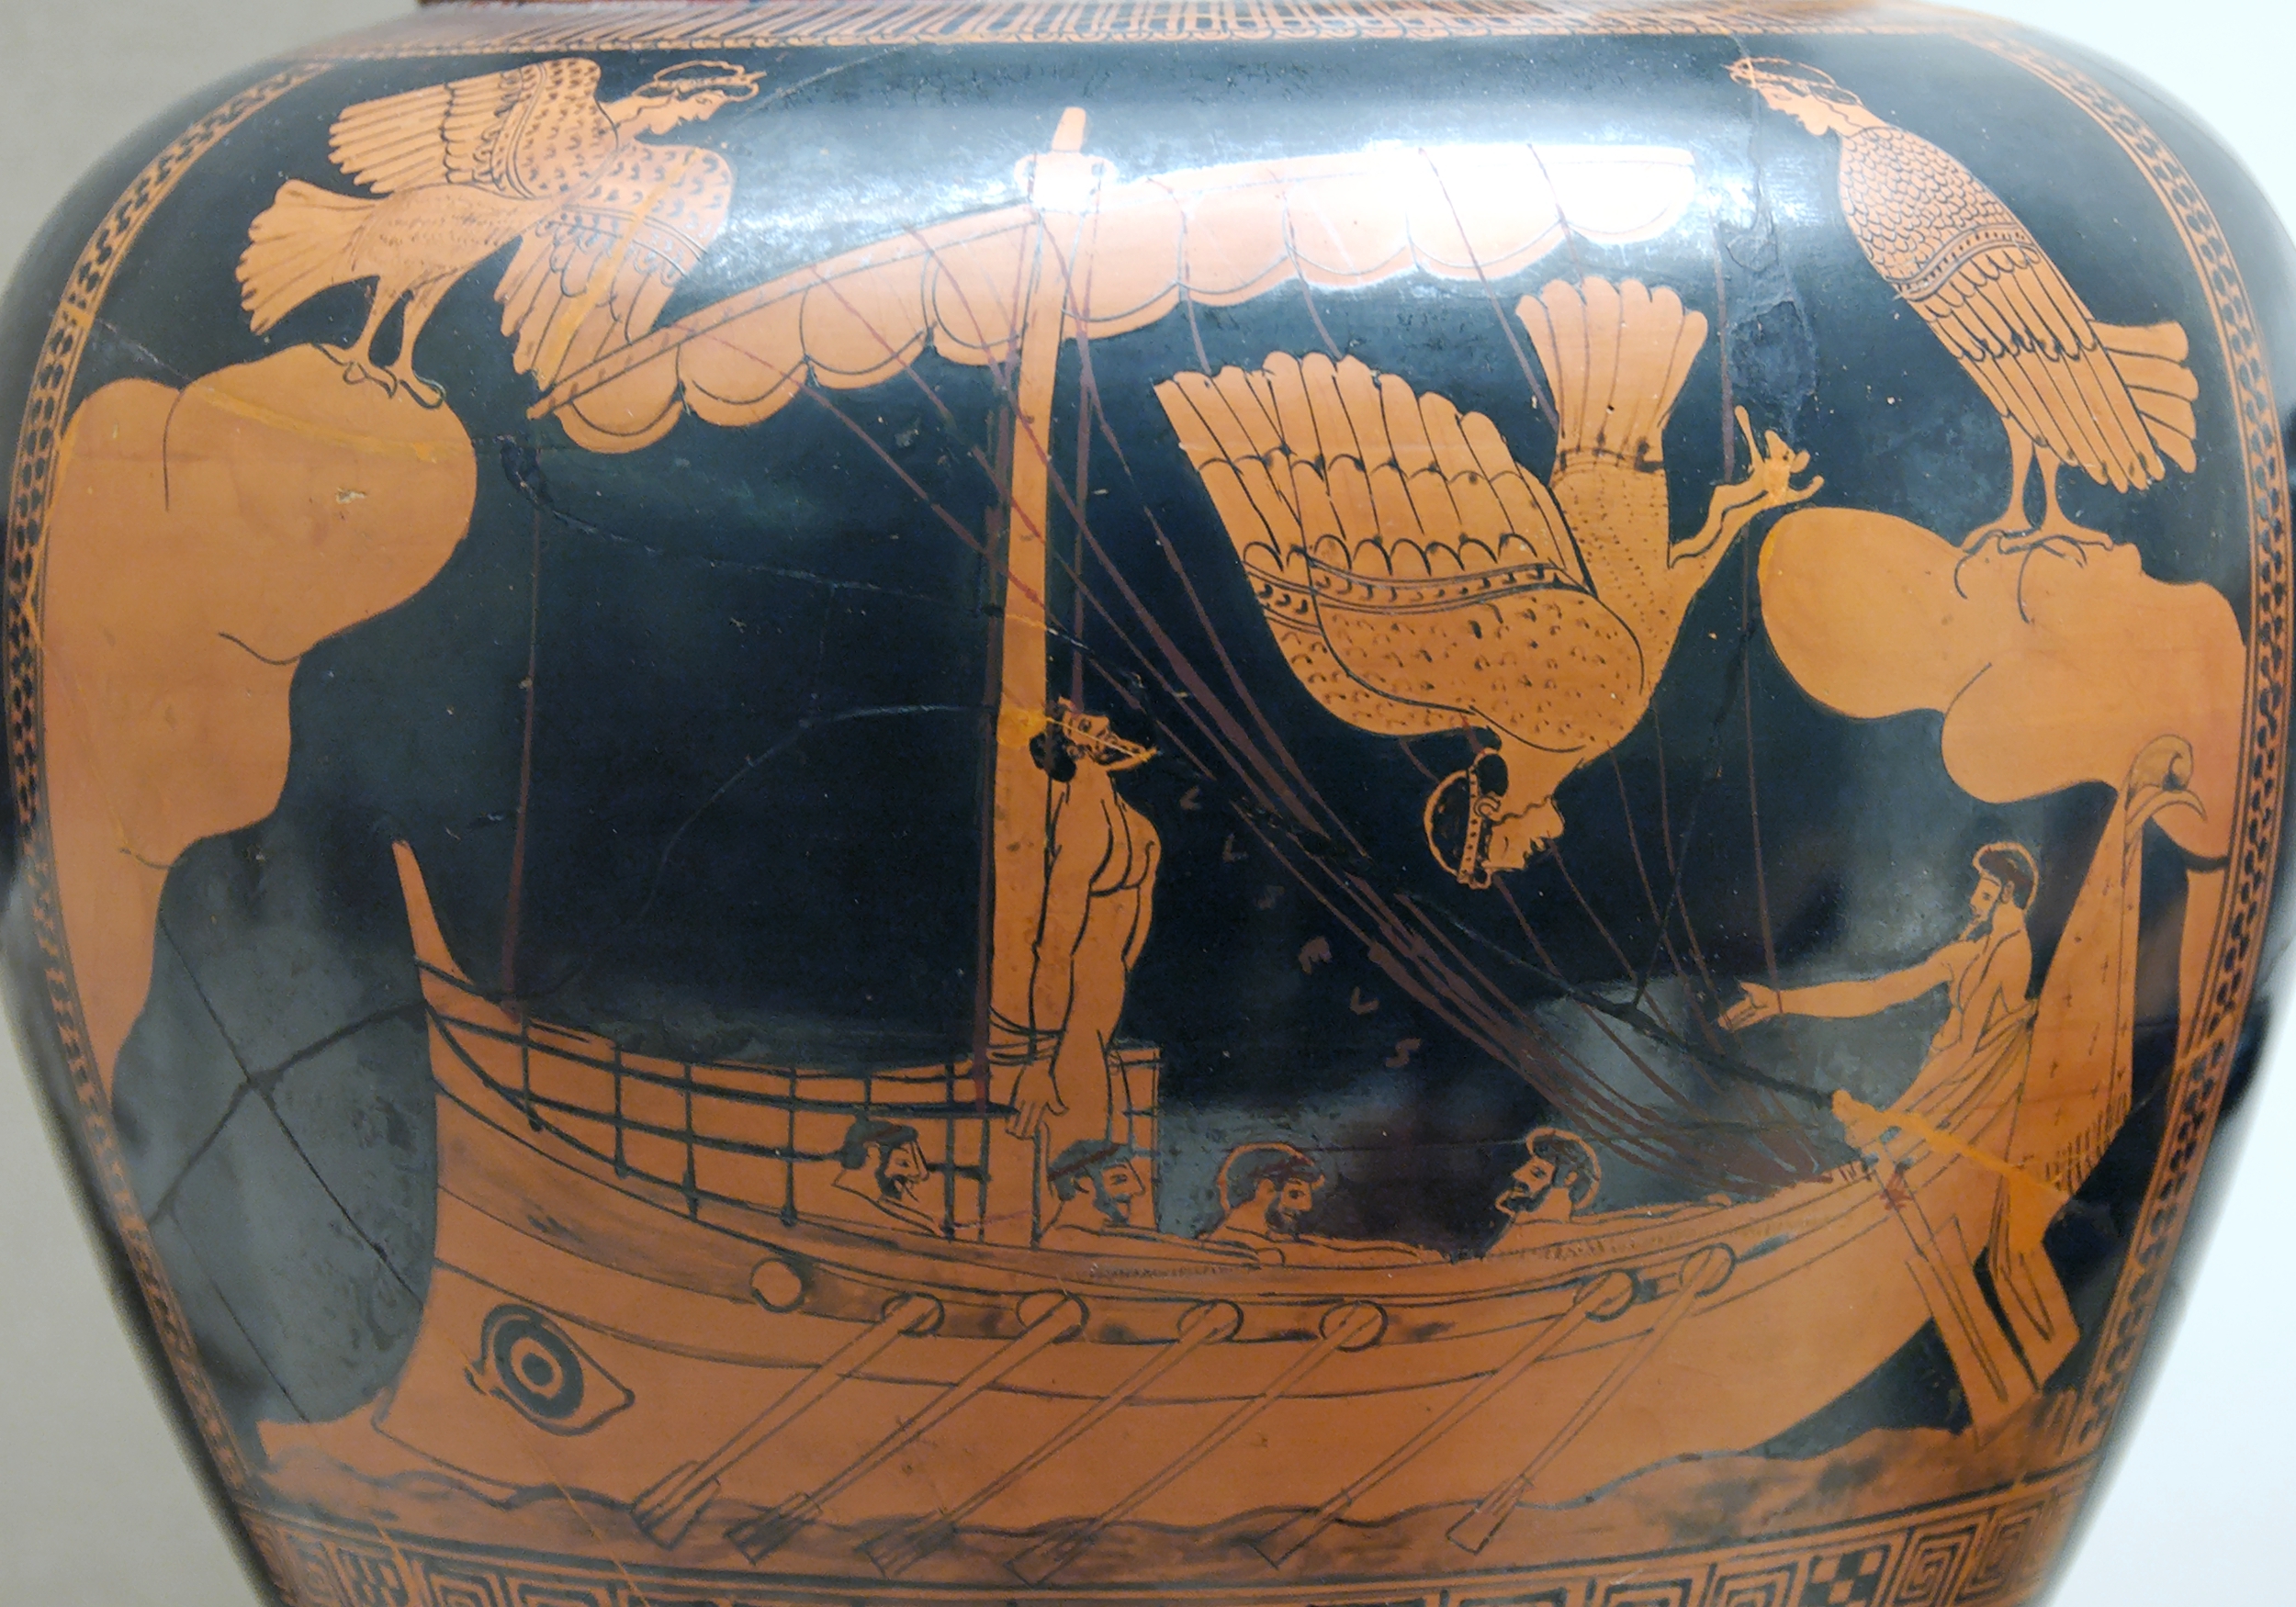 ZpÄ›v moĹ™skĂ˝ch panen lĂˇkal i Ĺ™eckĂ© nĂˇmoĹ™nĂ­ky do nebezpeÄŤnĂ˝ch mĂ­st kde lodÄ› troskotaly na skaliskĂˇch. Na  vĂˇze z let 480 - 470 pĹ™ed naĹˇĂ­m letopoÄŤtem je Odysseus a SirĂ©ny (Kredit: British Museum)